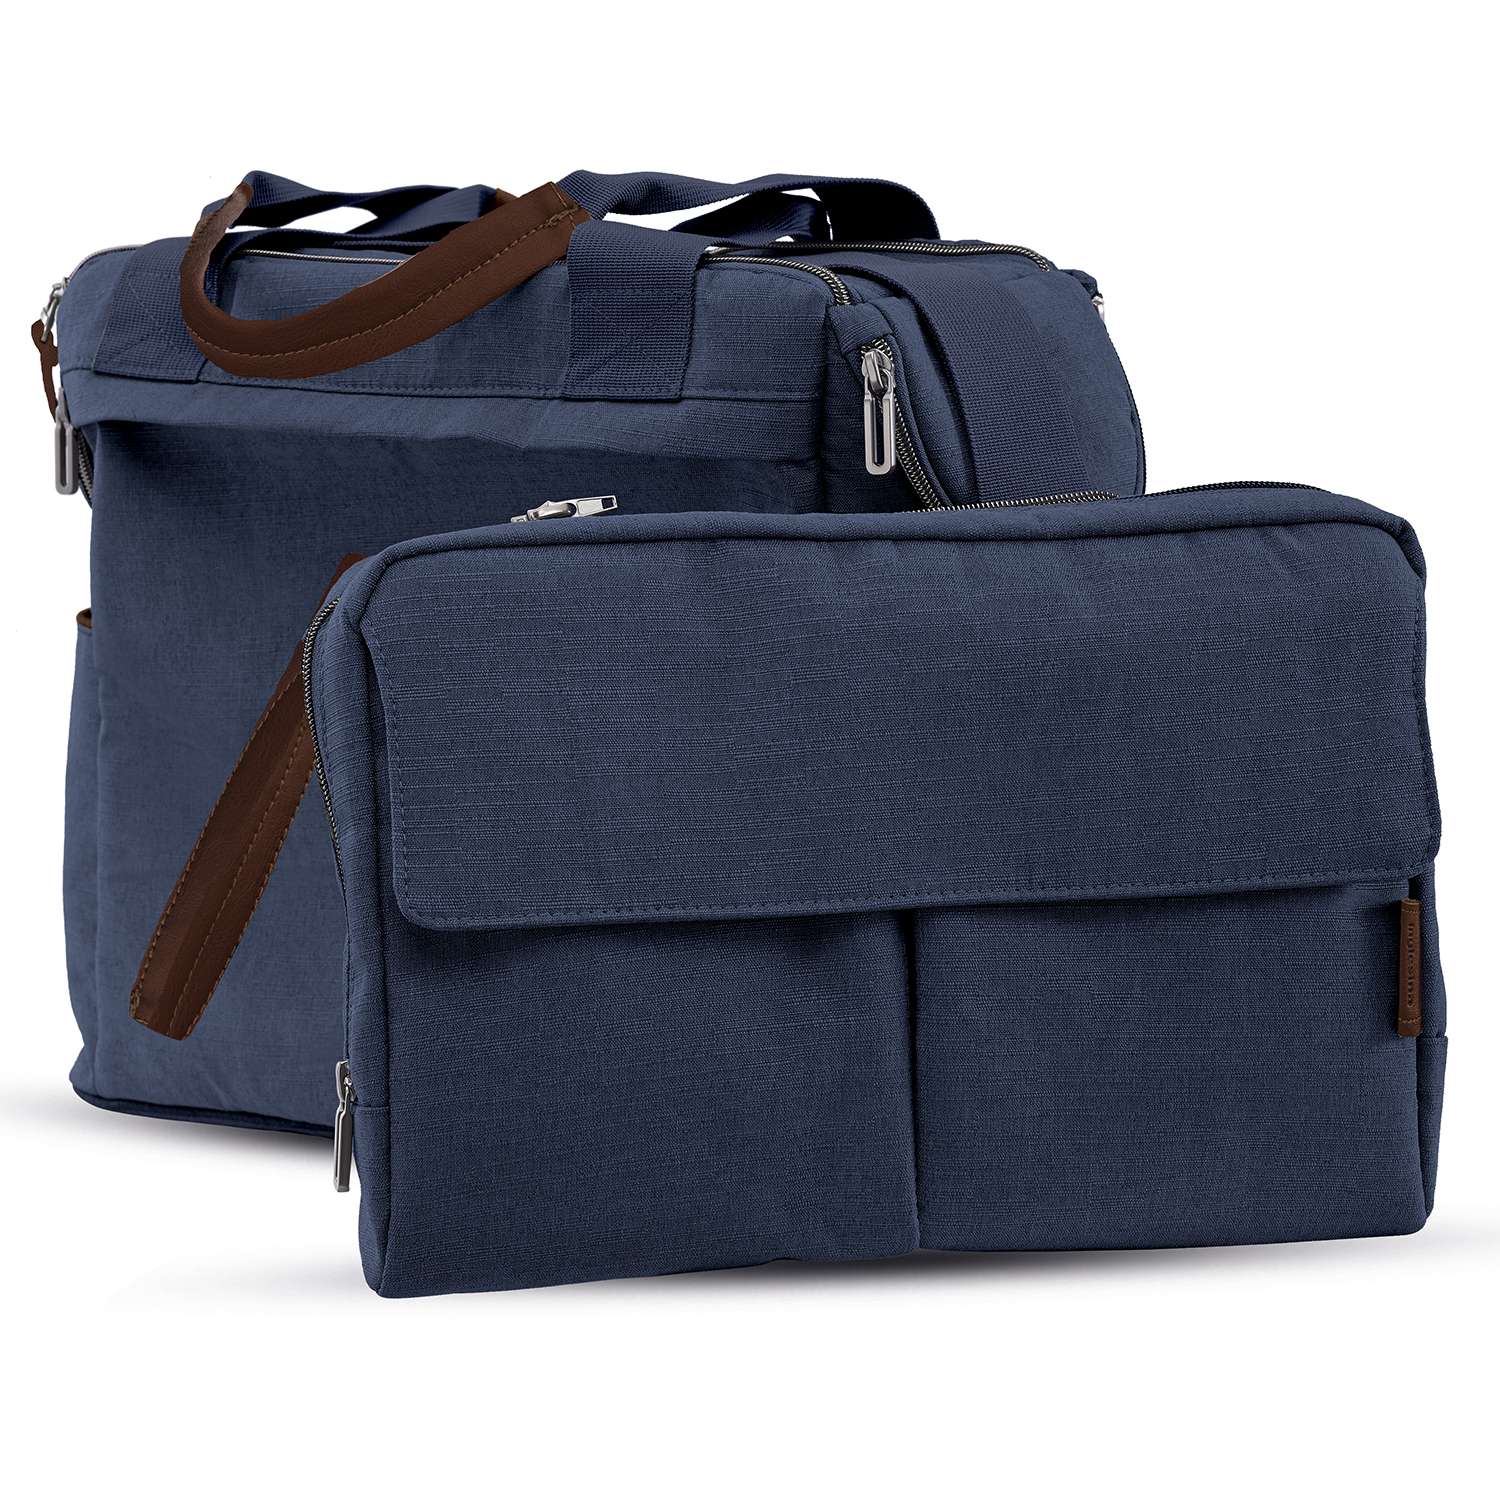 Сумка для коляски Inglesina Dual Bag Oxford Blue - фото 2